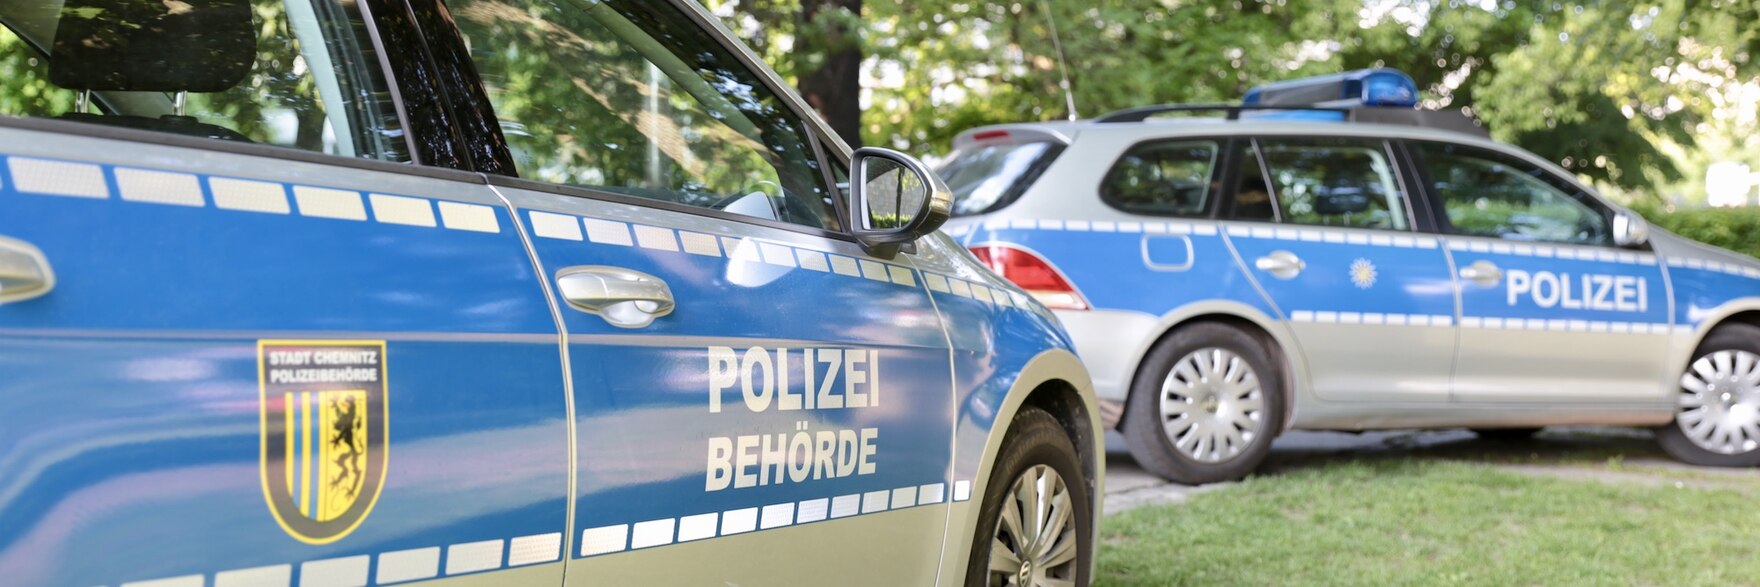 Zwei Streifenwagen der Polizeibehörde und der Polizei Sachsen